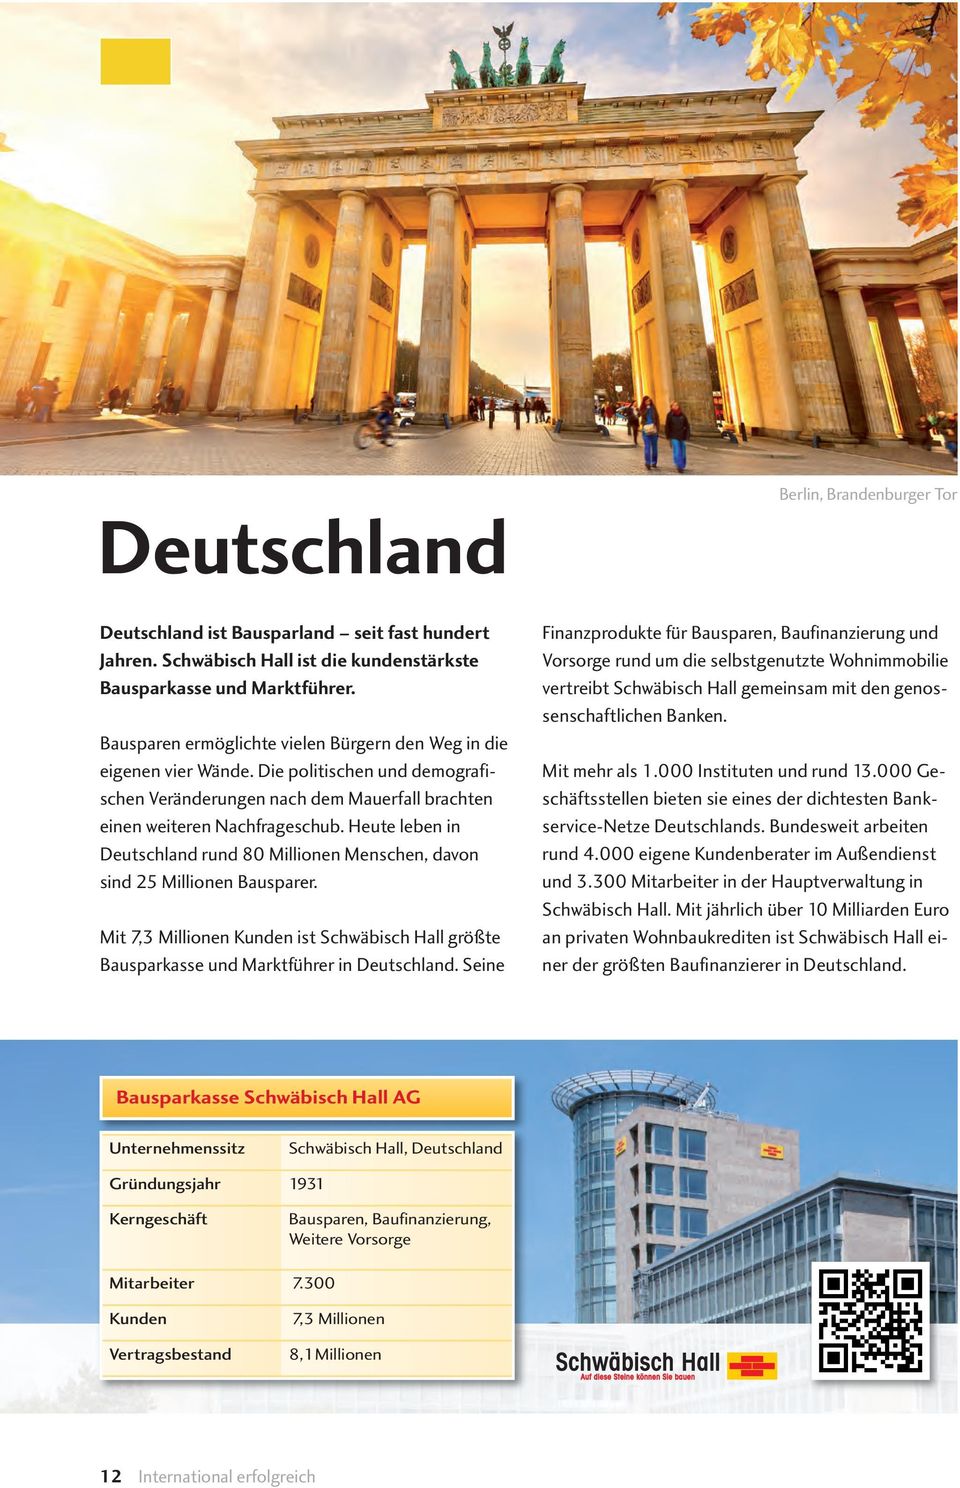 Heute leben in Deutschland rund 80 Millionen Menschen, davon sind 25 Millionen Bausparer. Mit 7,3 Millionen Kunden ist Schwäbisch Hall größte Bausparkasse und Marktführer in Deutschland.